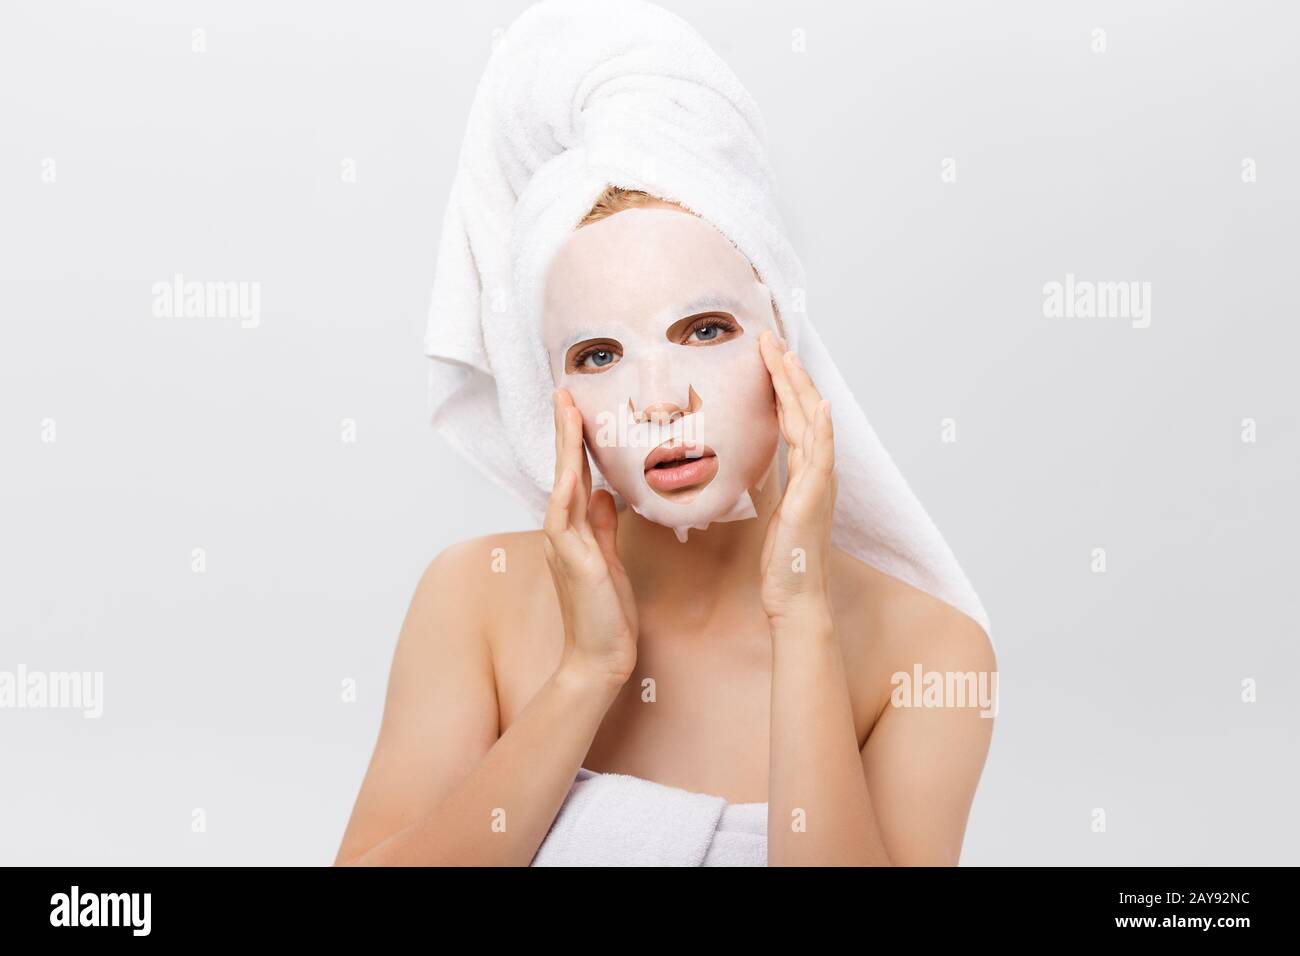 Soins De La Peau - concept beauté Belle Caucasian Woman l'application de la feuille de papier sur son visage masque fond blanc. Banque D'Images